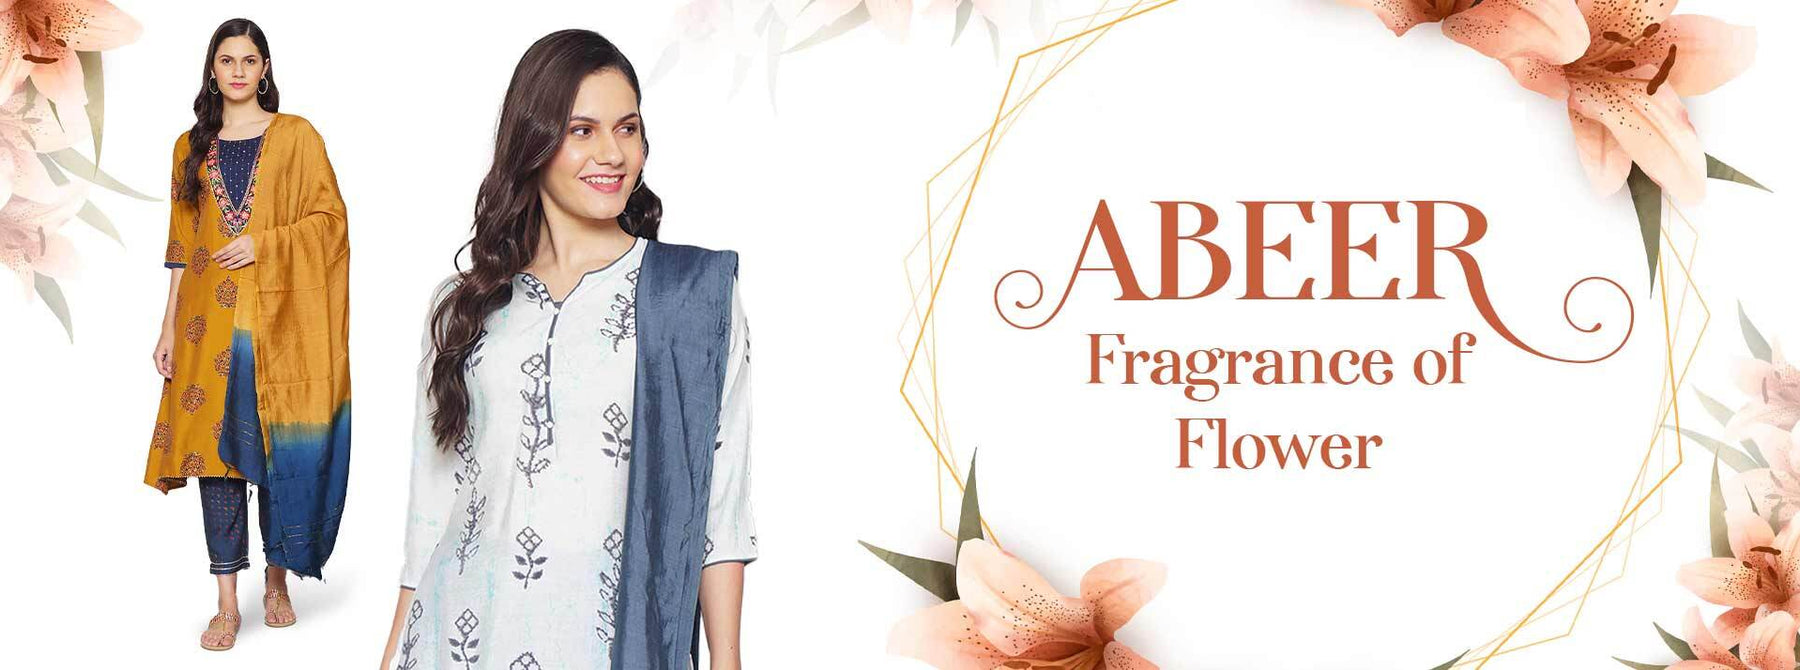 Abeer- Fragrance of Flower